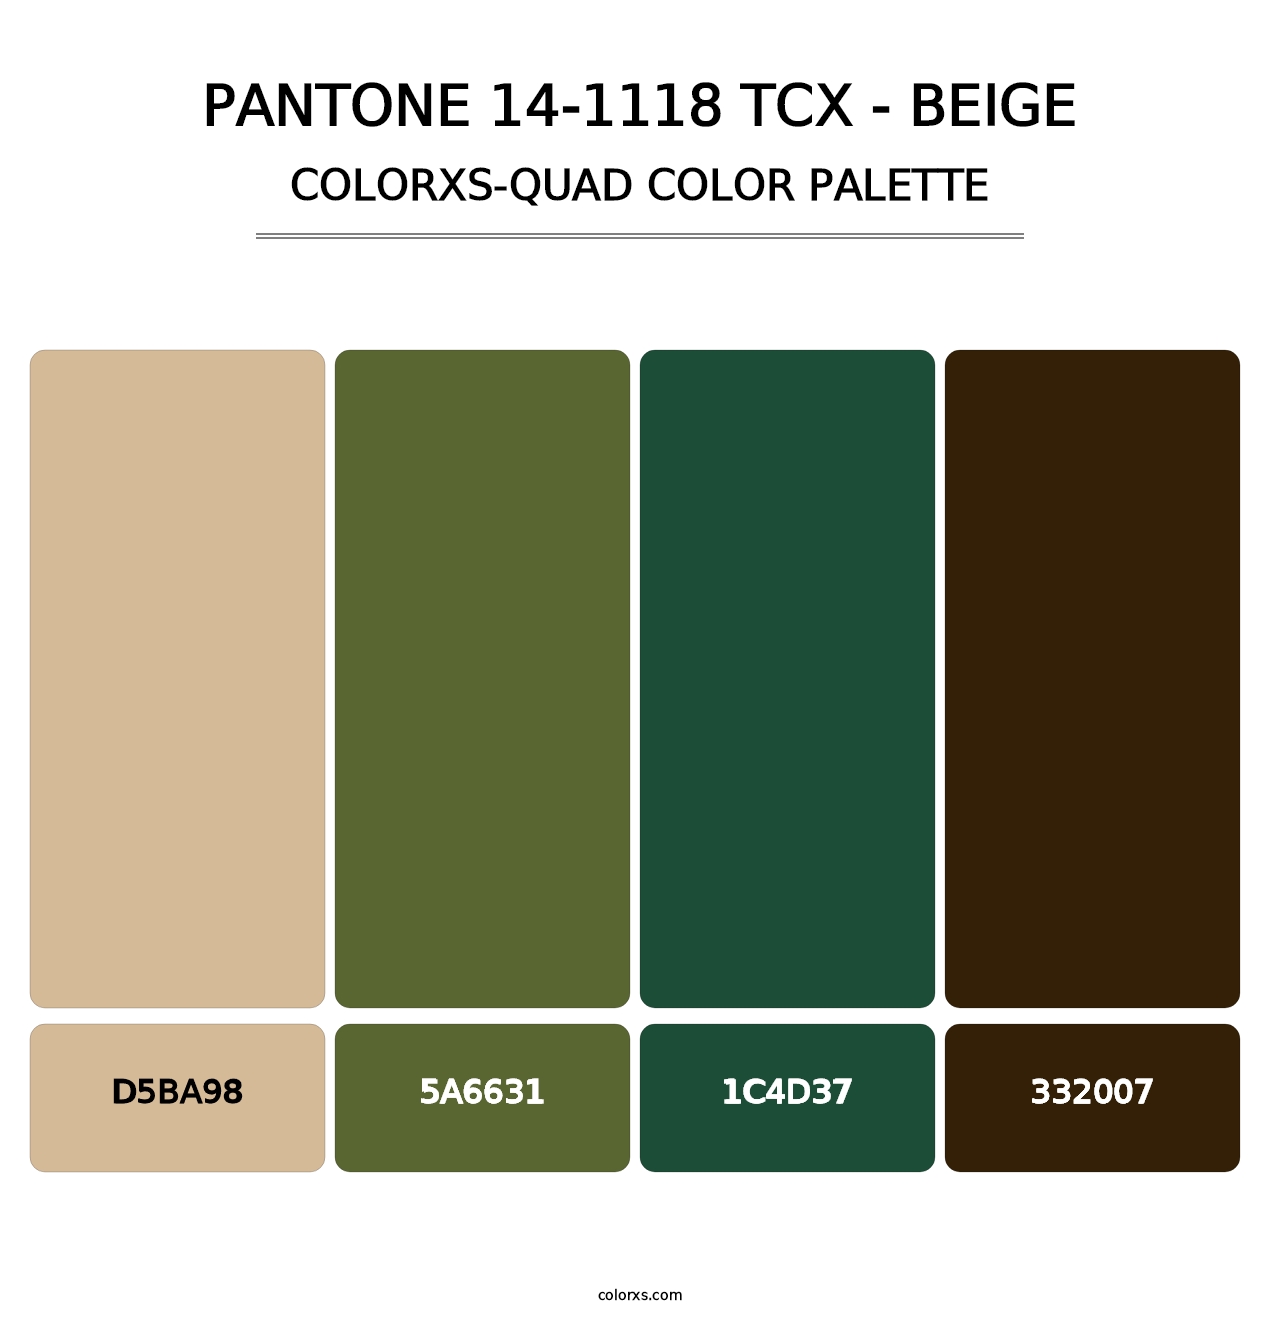 PANTONE 14-1118 TCX - Beige - Colorxs Quad Palette